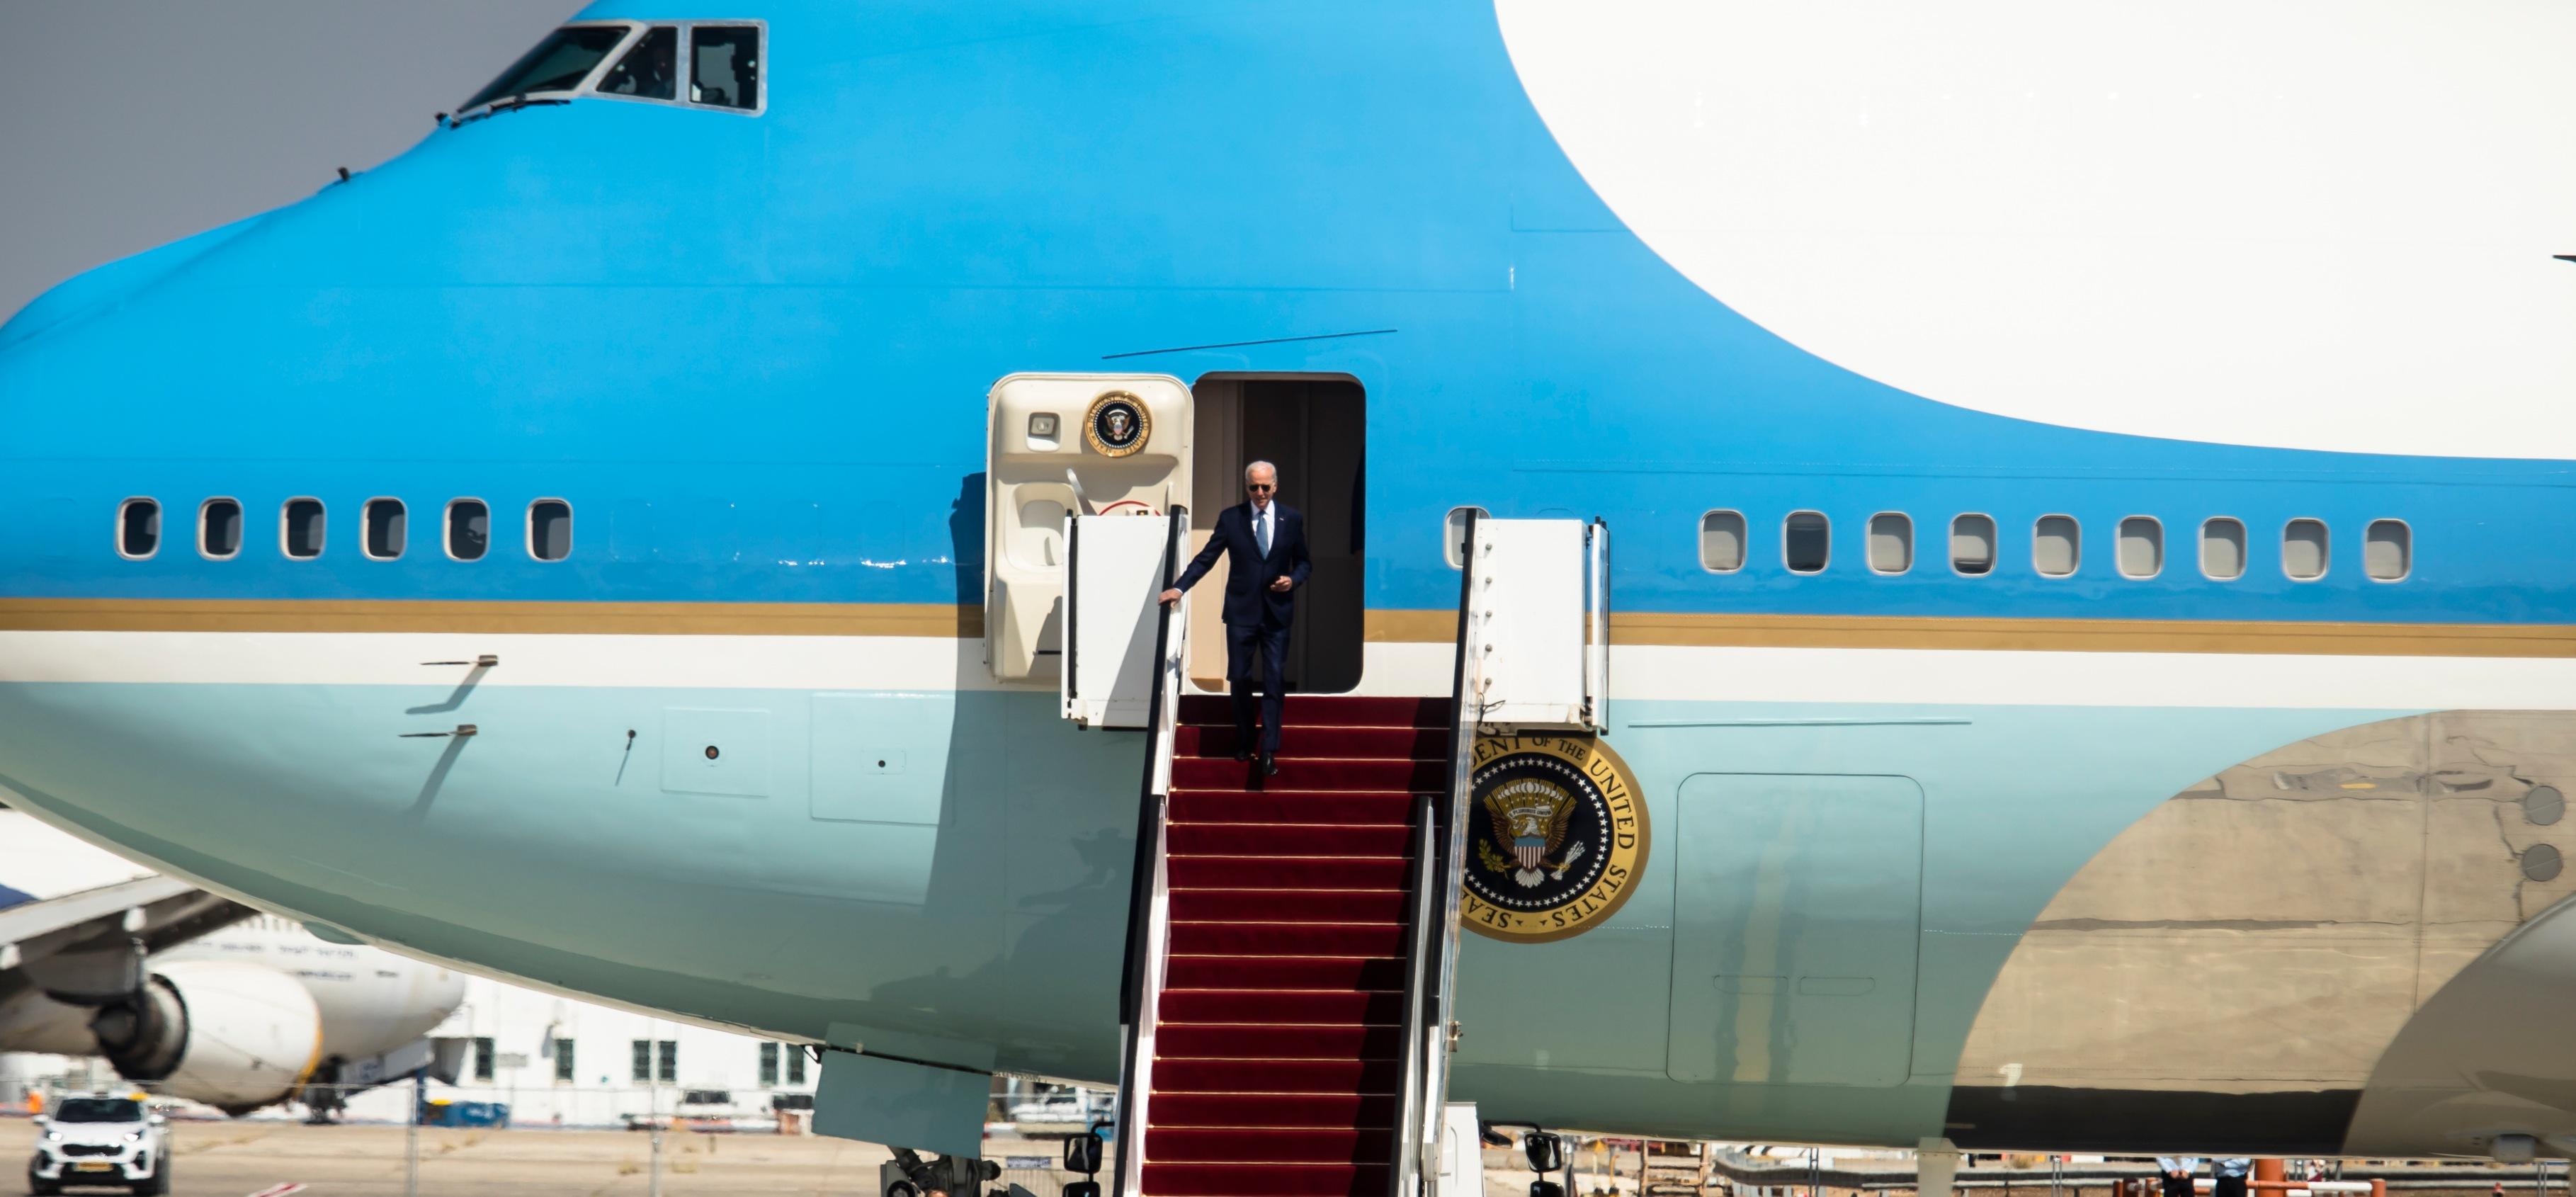 resident Joe Biden descends from Air Force One